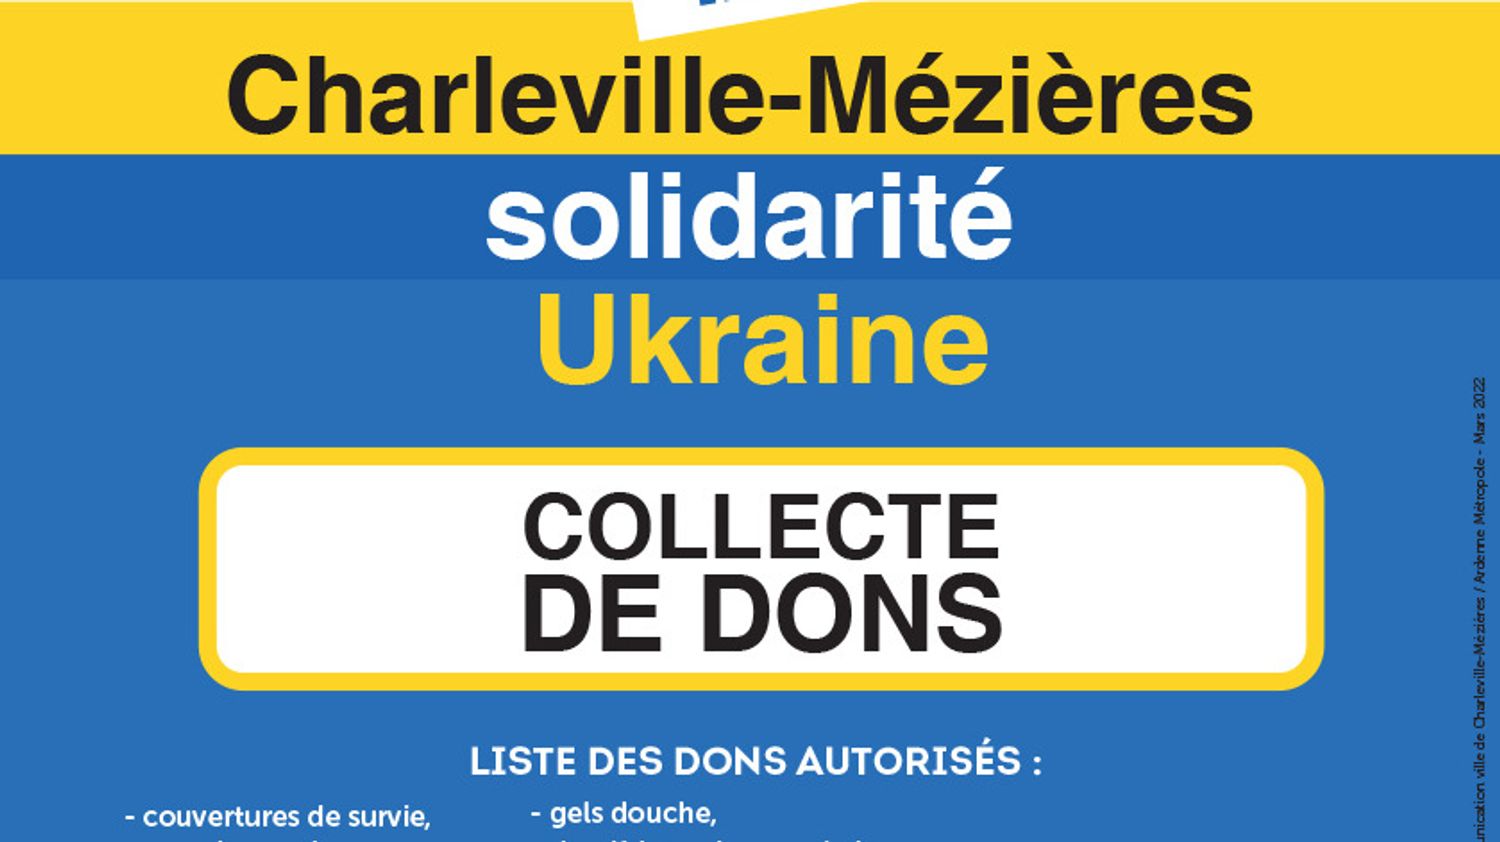 Ukraine collecte Charleville